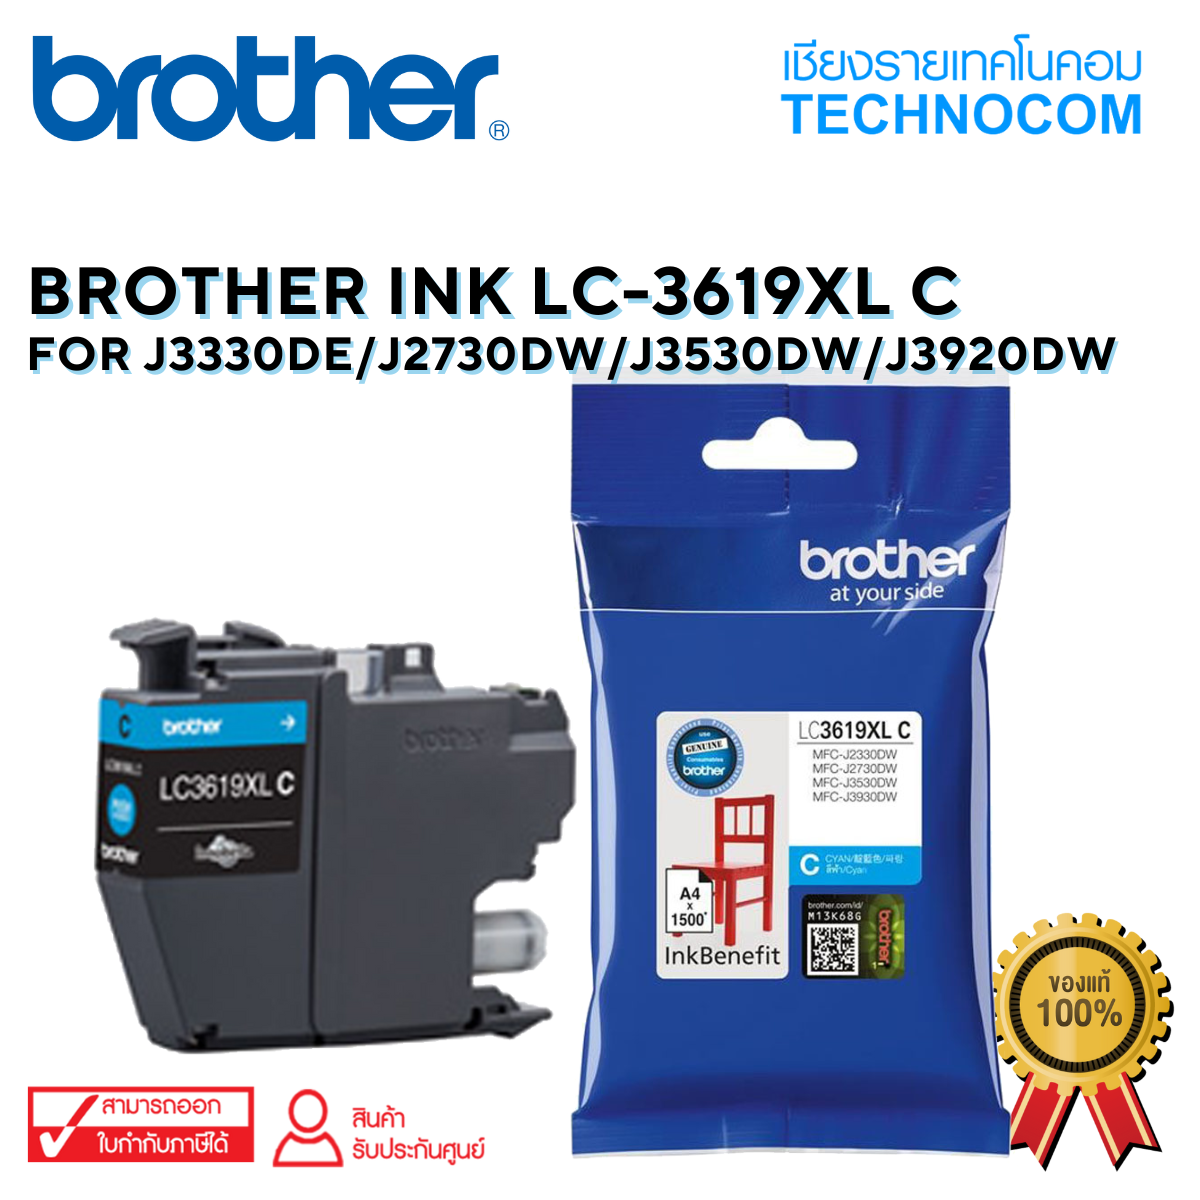 BROTHER INK LC-3619XLC  For J3330DE/J2730DW/J3530DW/J3920DW